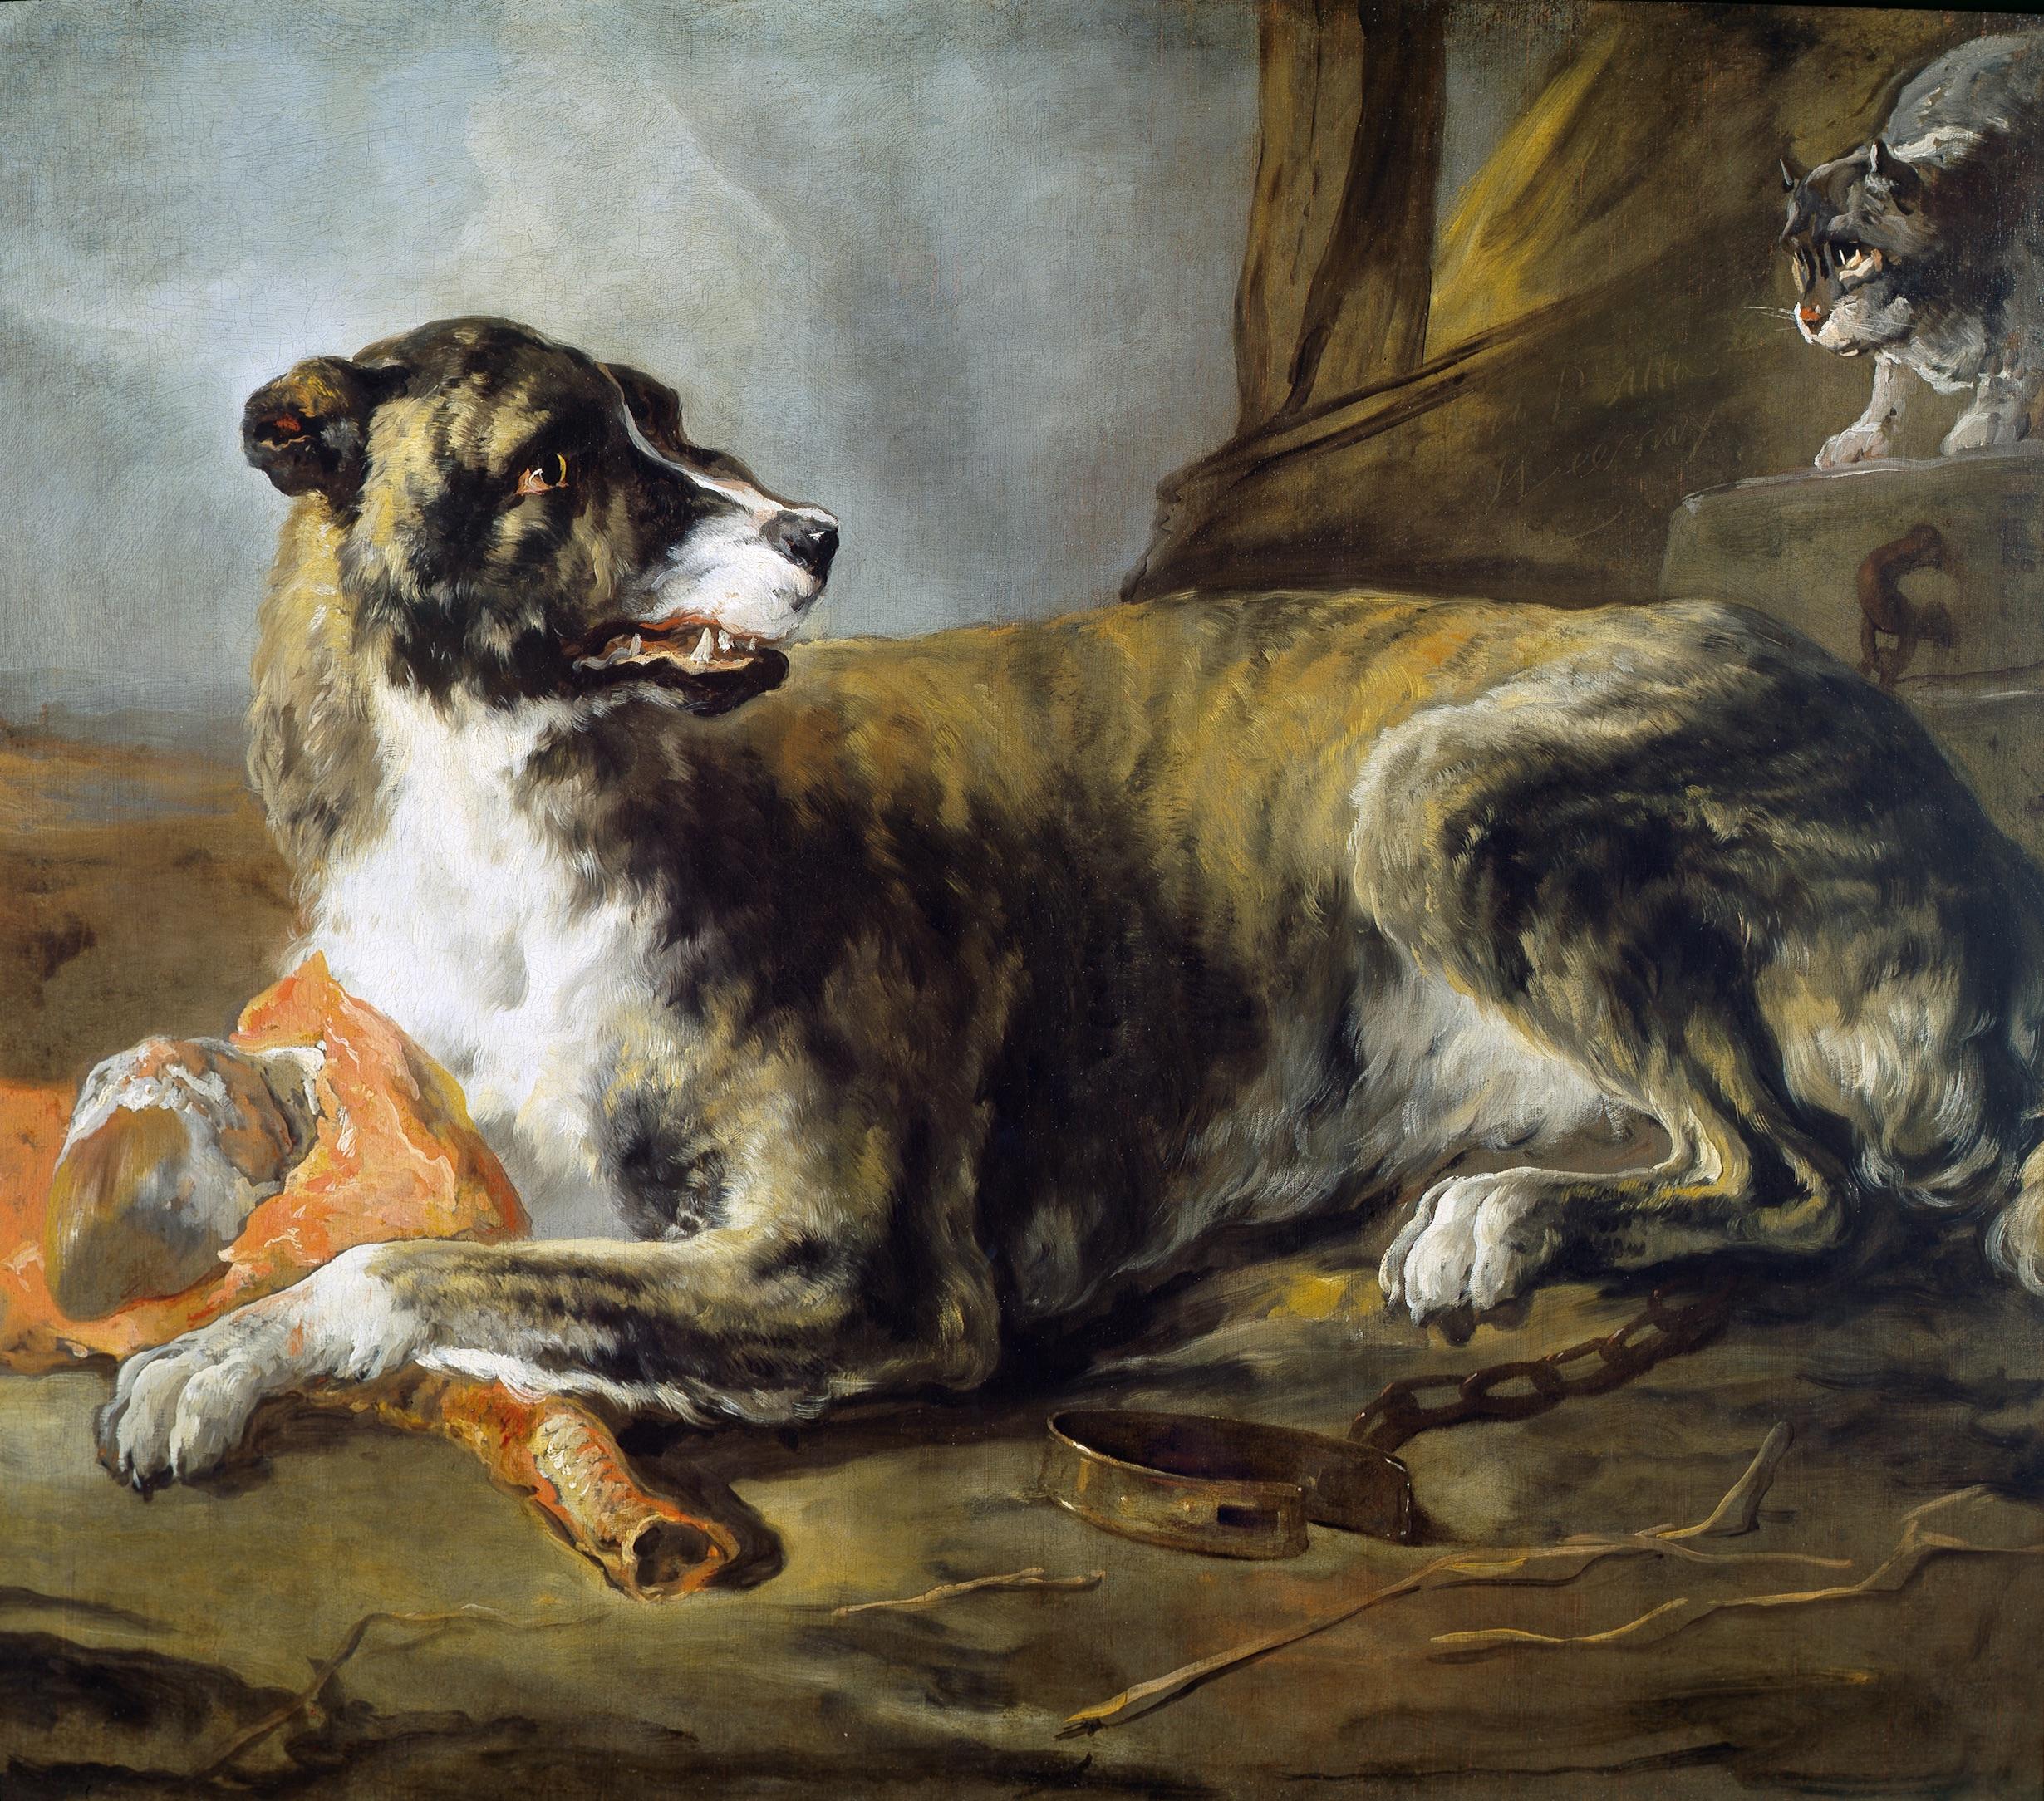 A Boar Hound mit einem Fleischgeschirr in der Nähe einer erschütterten Katze  – Painting von Jan Baptist Weenix